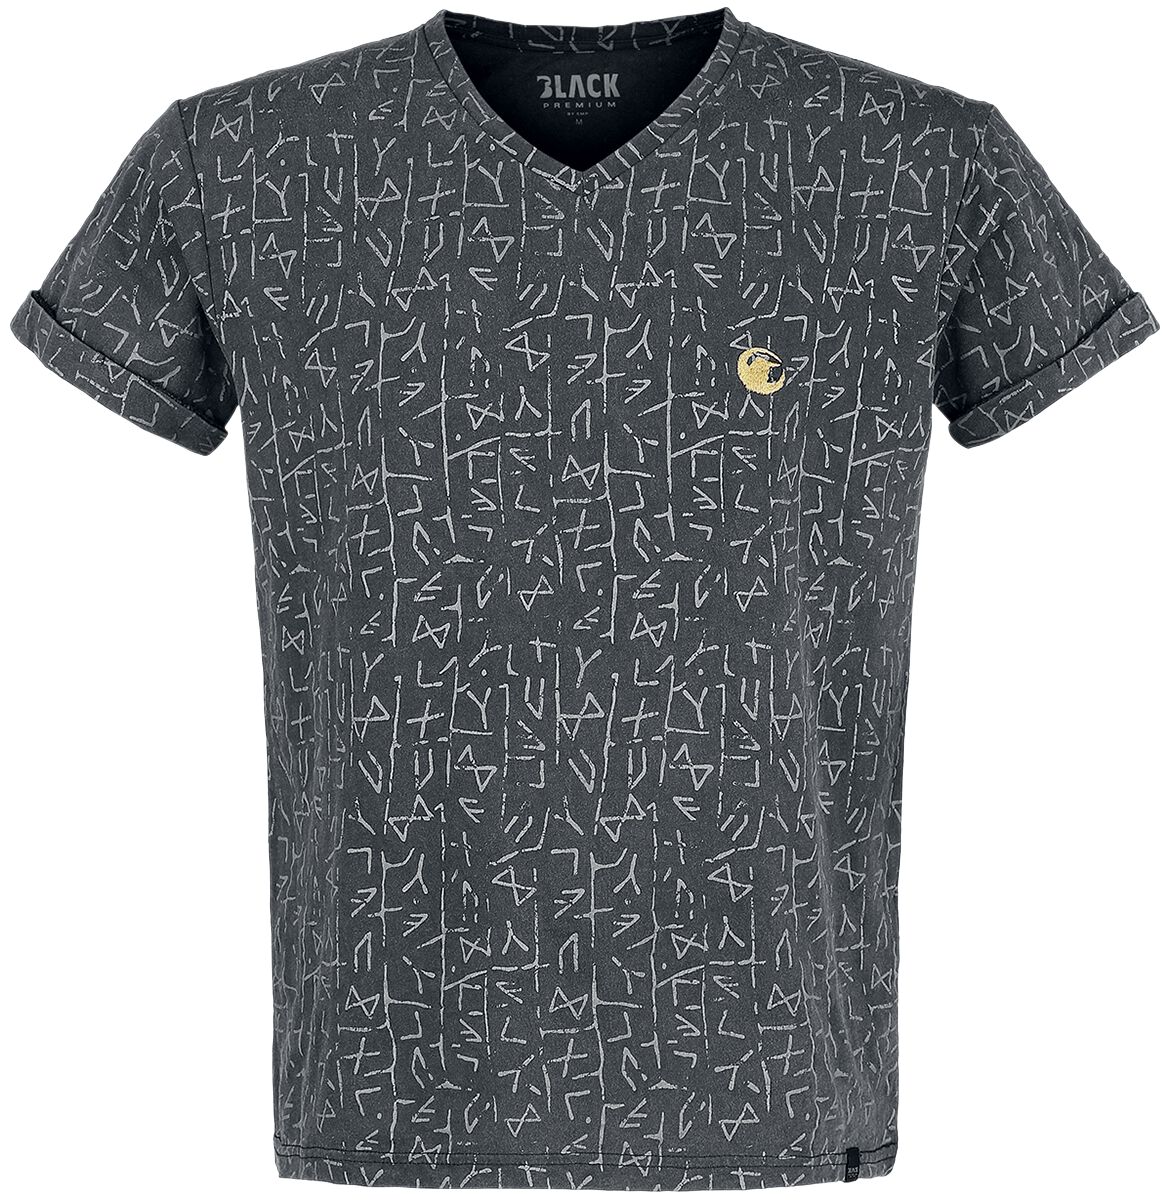 Black Premium by EMP T-Shirt - T-Shirt mit Runenprint - S bis 5XL - für Männer - Größe L - grau